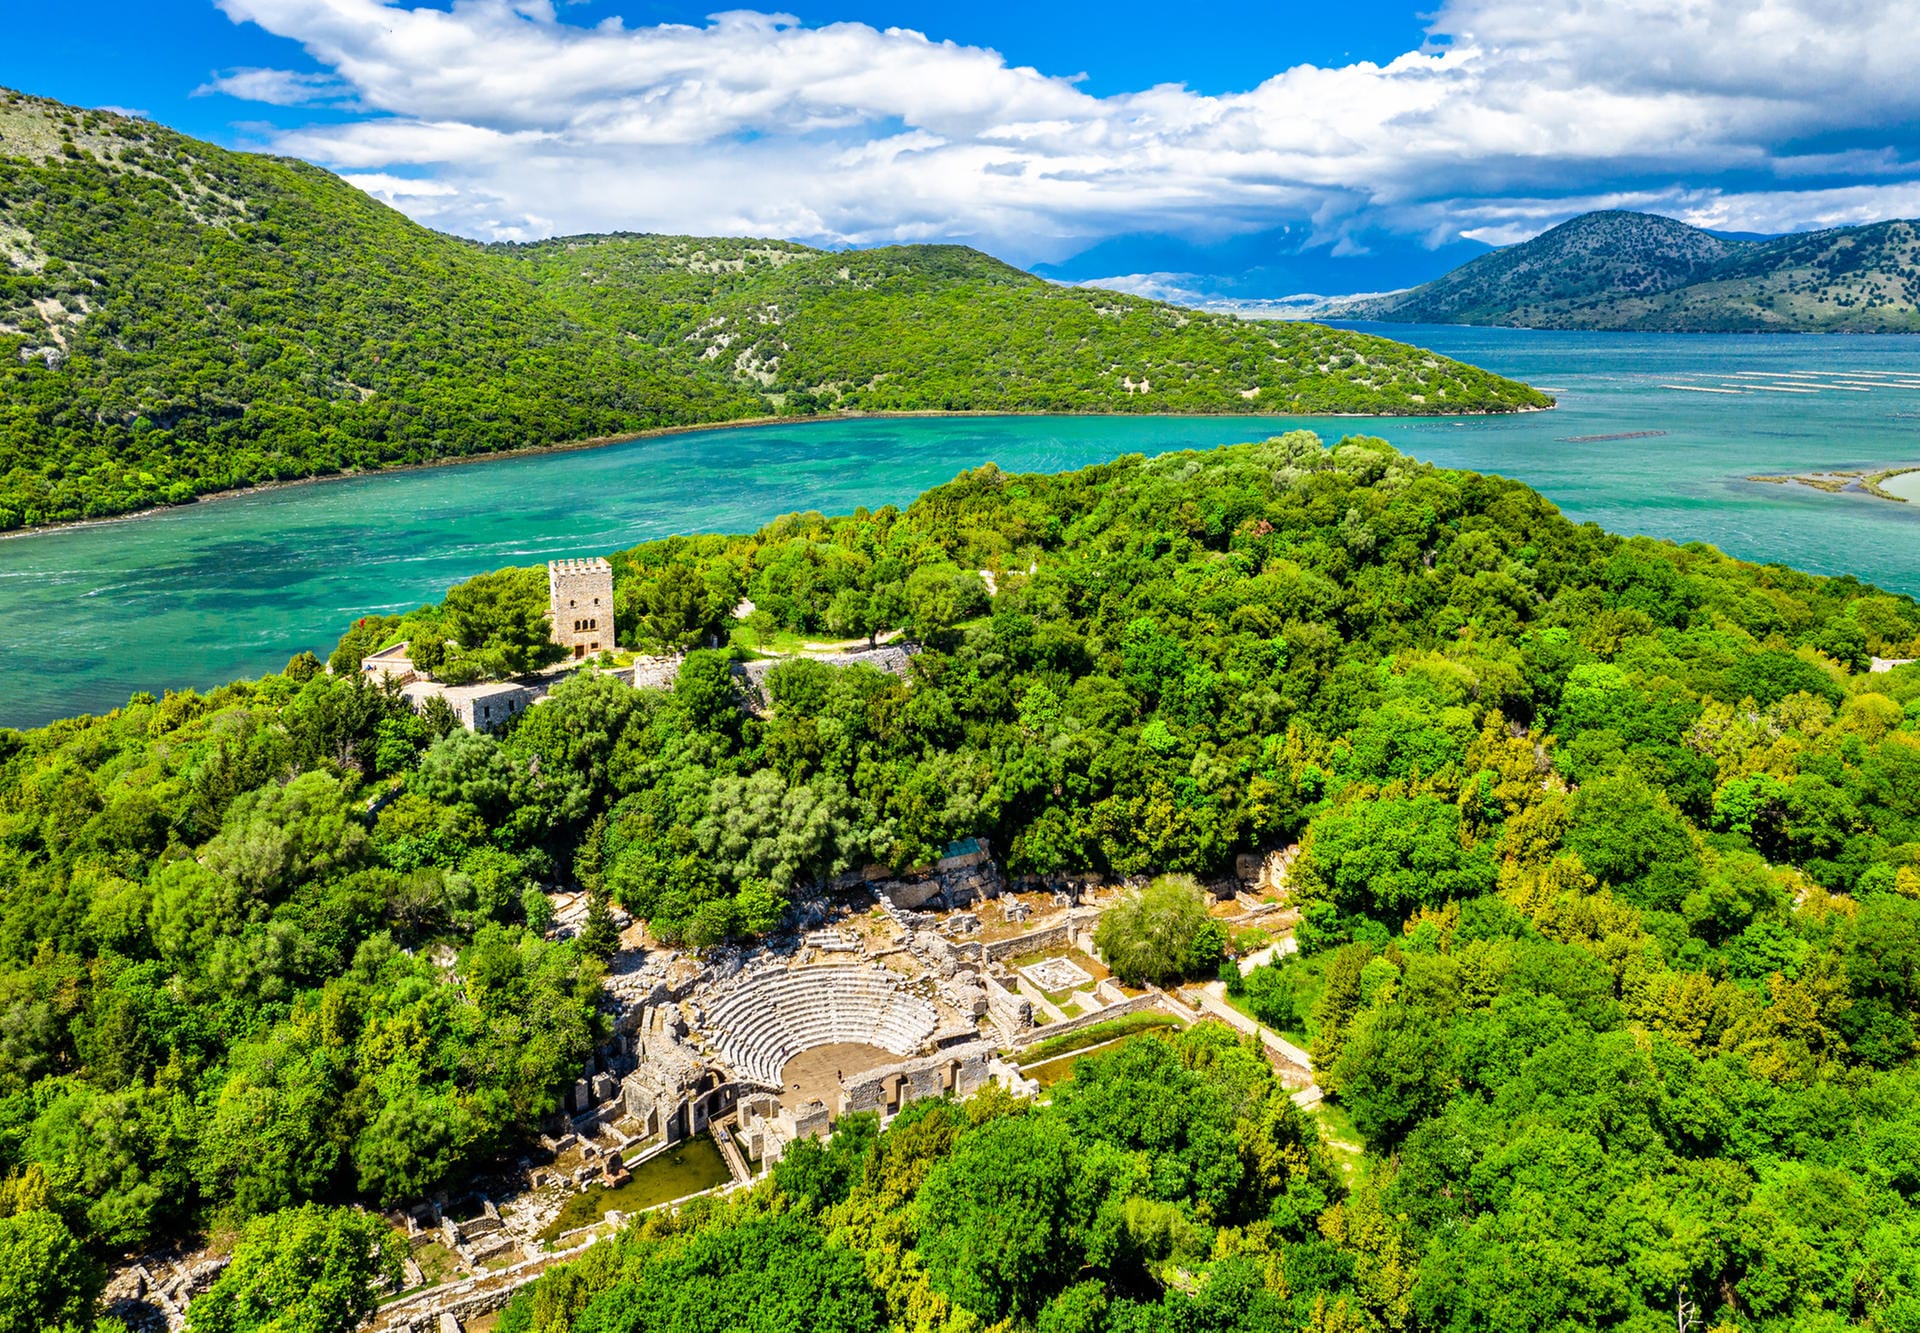 Ruinenstadt Butrint auf einer Halbinsel: Die Stadt ist eines der beliebtesten Ziele für Touristen in Albanien und gehört seit 1992 zum UNESCO-Weltkulturerbe. Die Stadt zählt außerdem zu den Welterbestätten des Mittelmeerstaates.